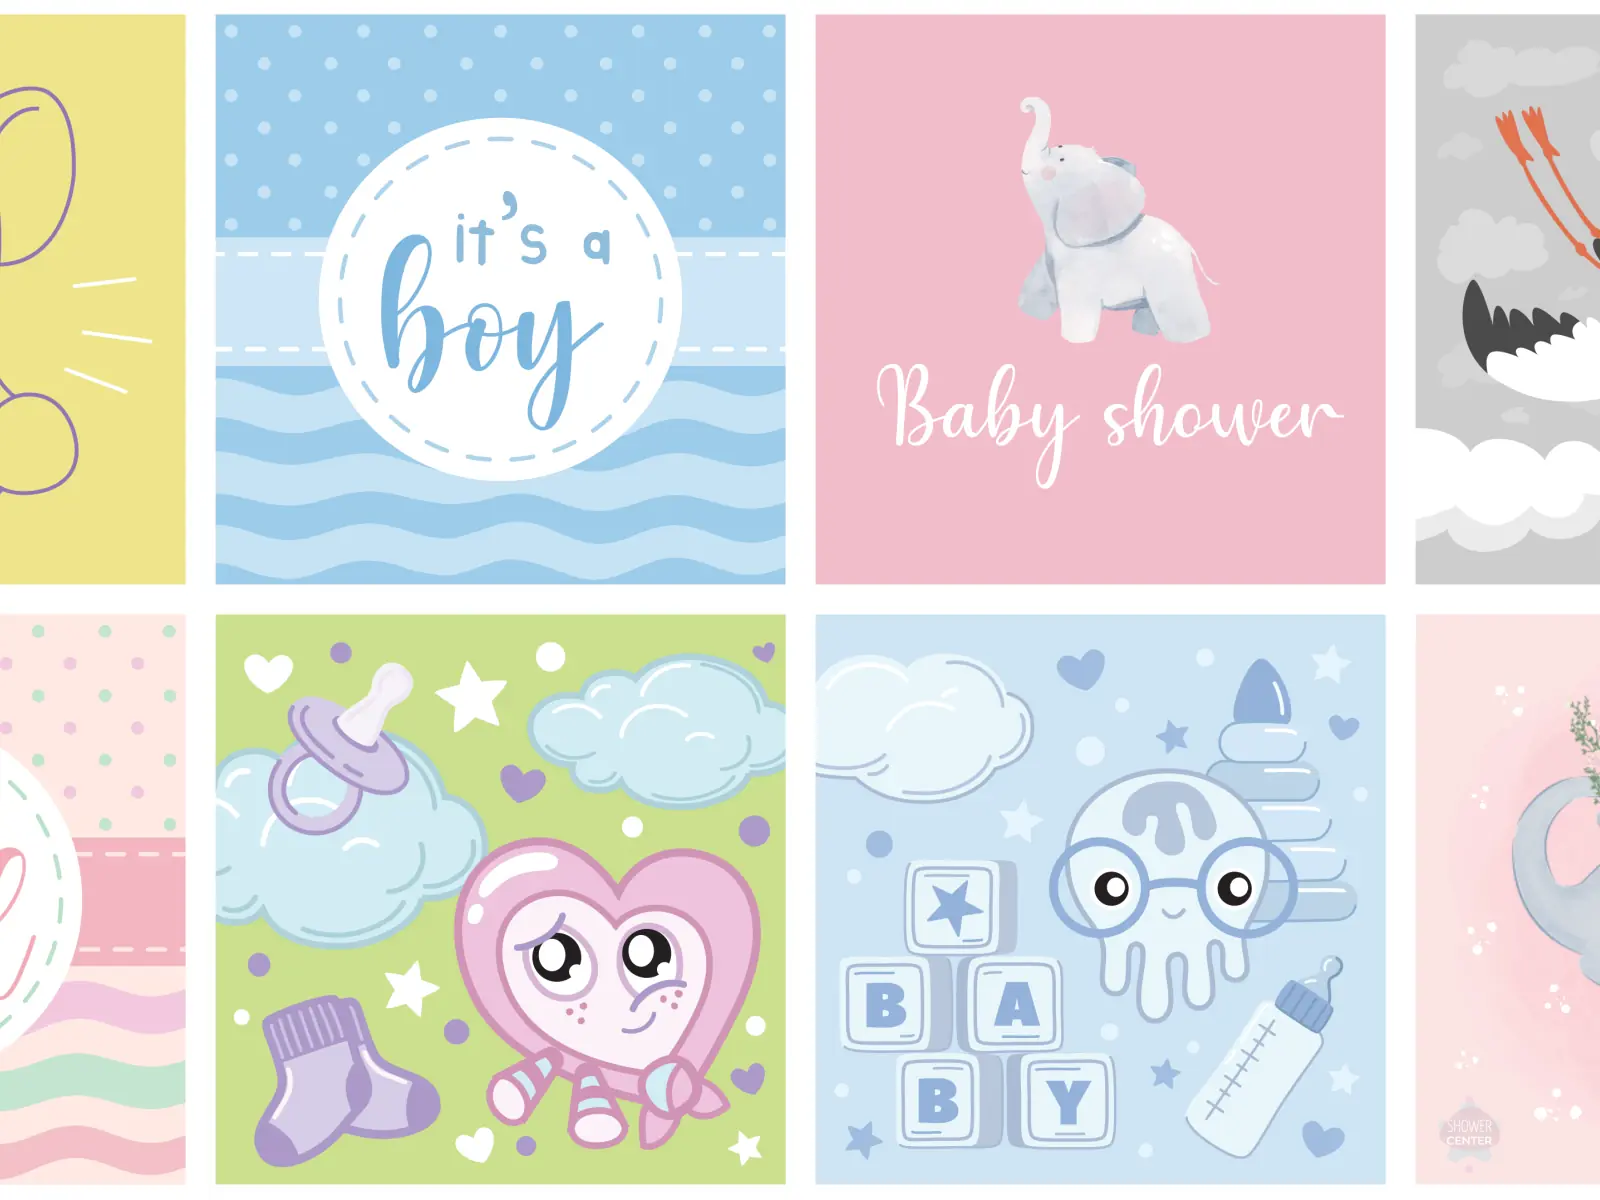 Invitaciones digitales gratis para Baby Shower Crea tarjetas con diseños encantadores. Personaliza fácilmente y envía las